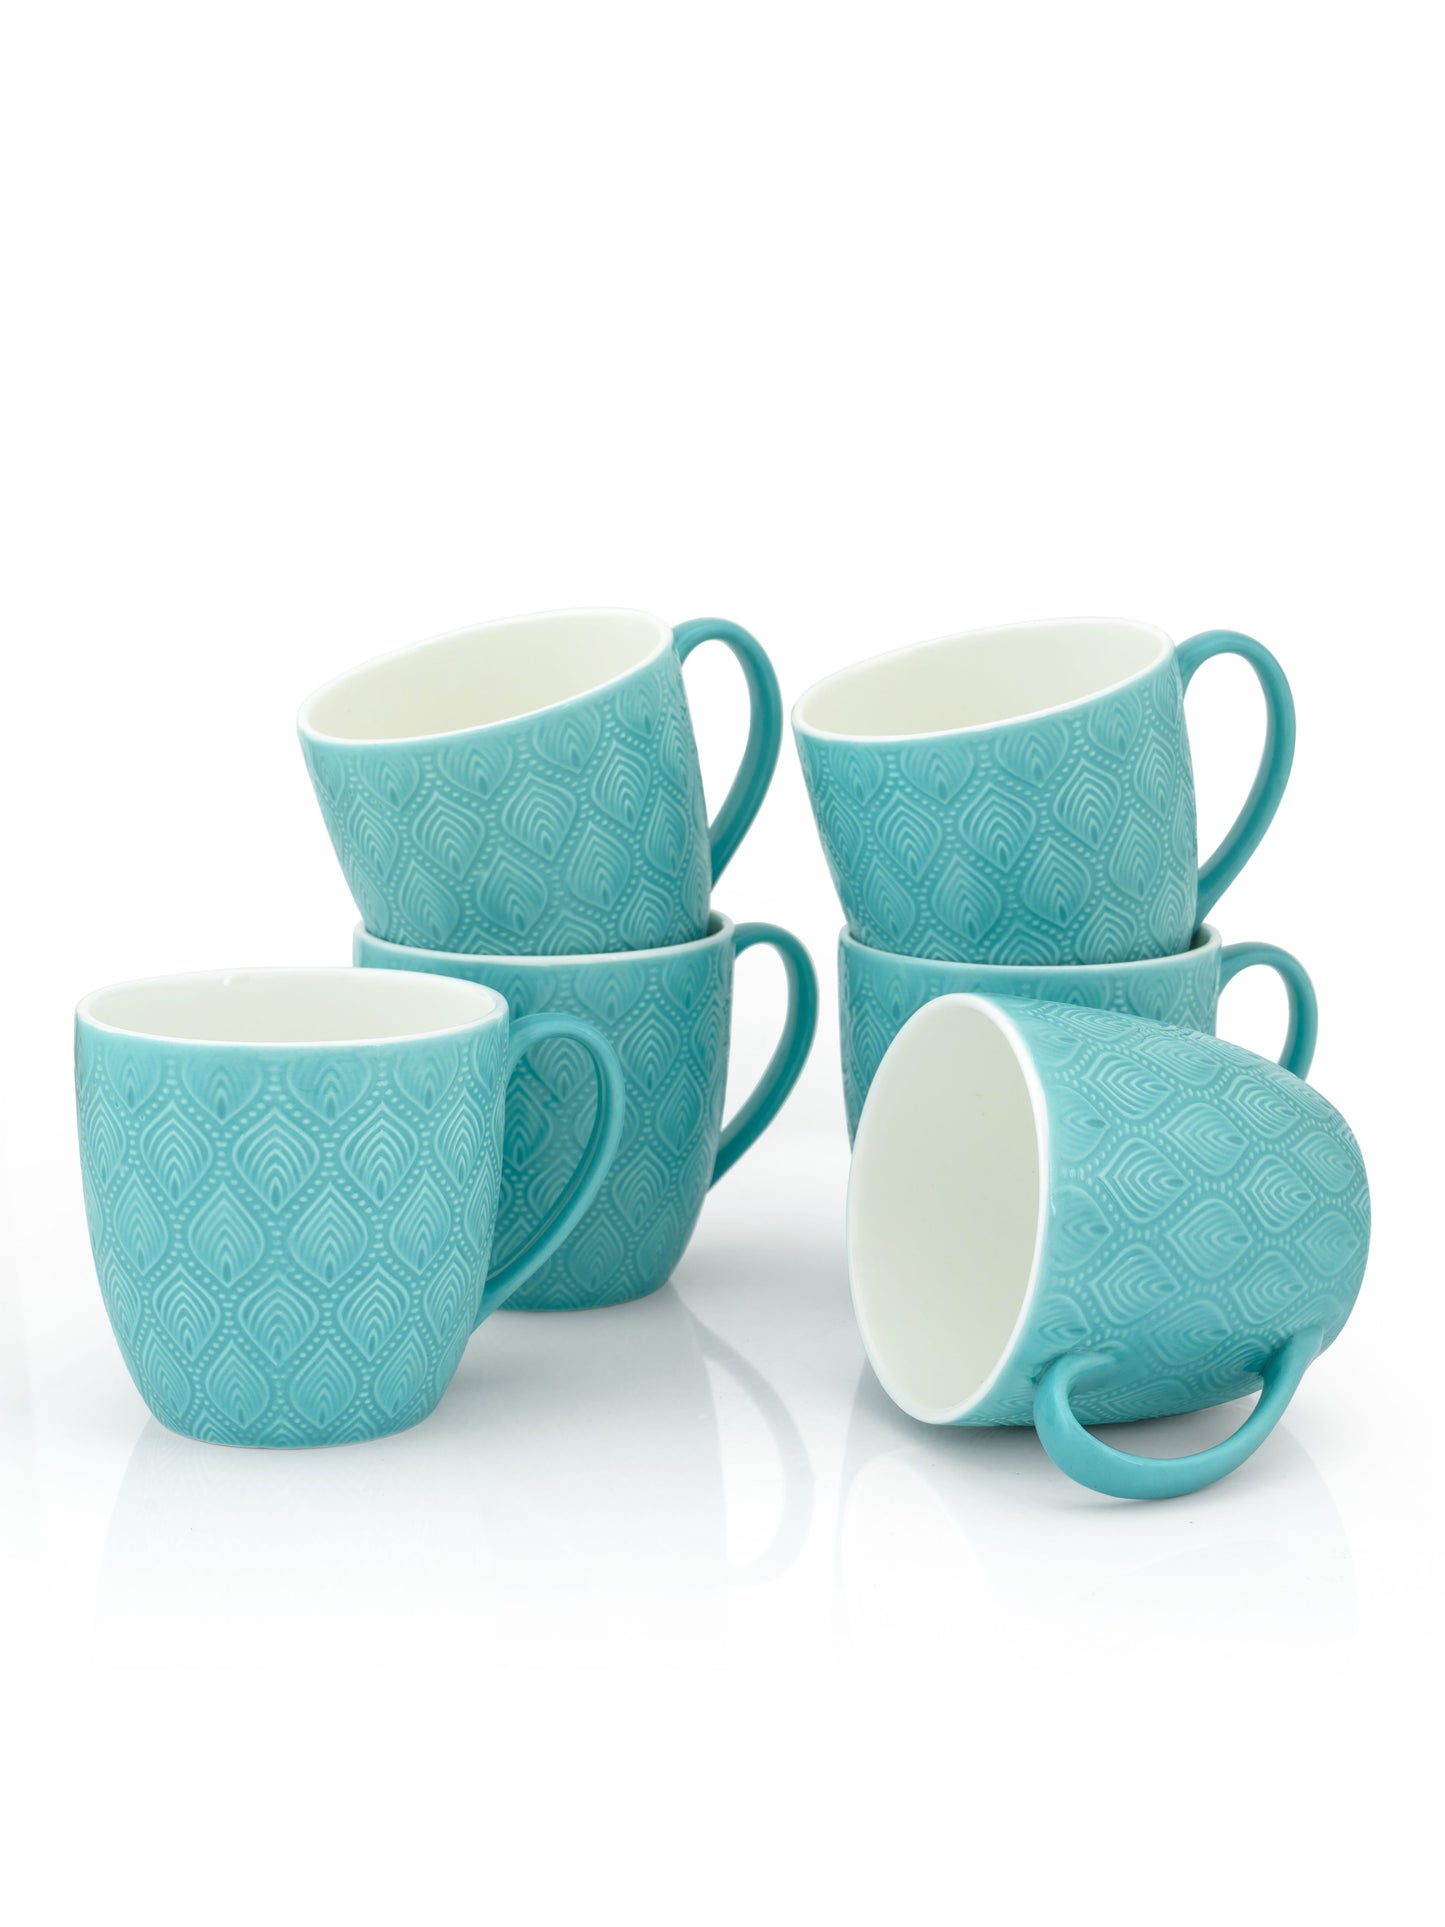 JCPL Feast Kohinoor Coffee & Tea Mug Set of 6 (Blue)